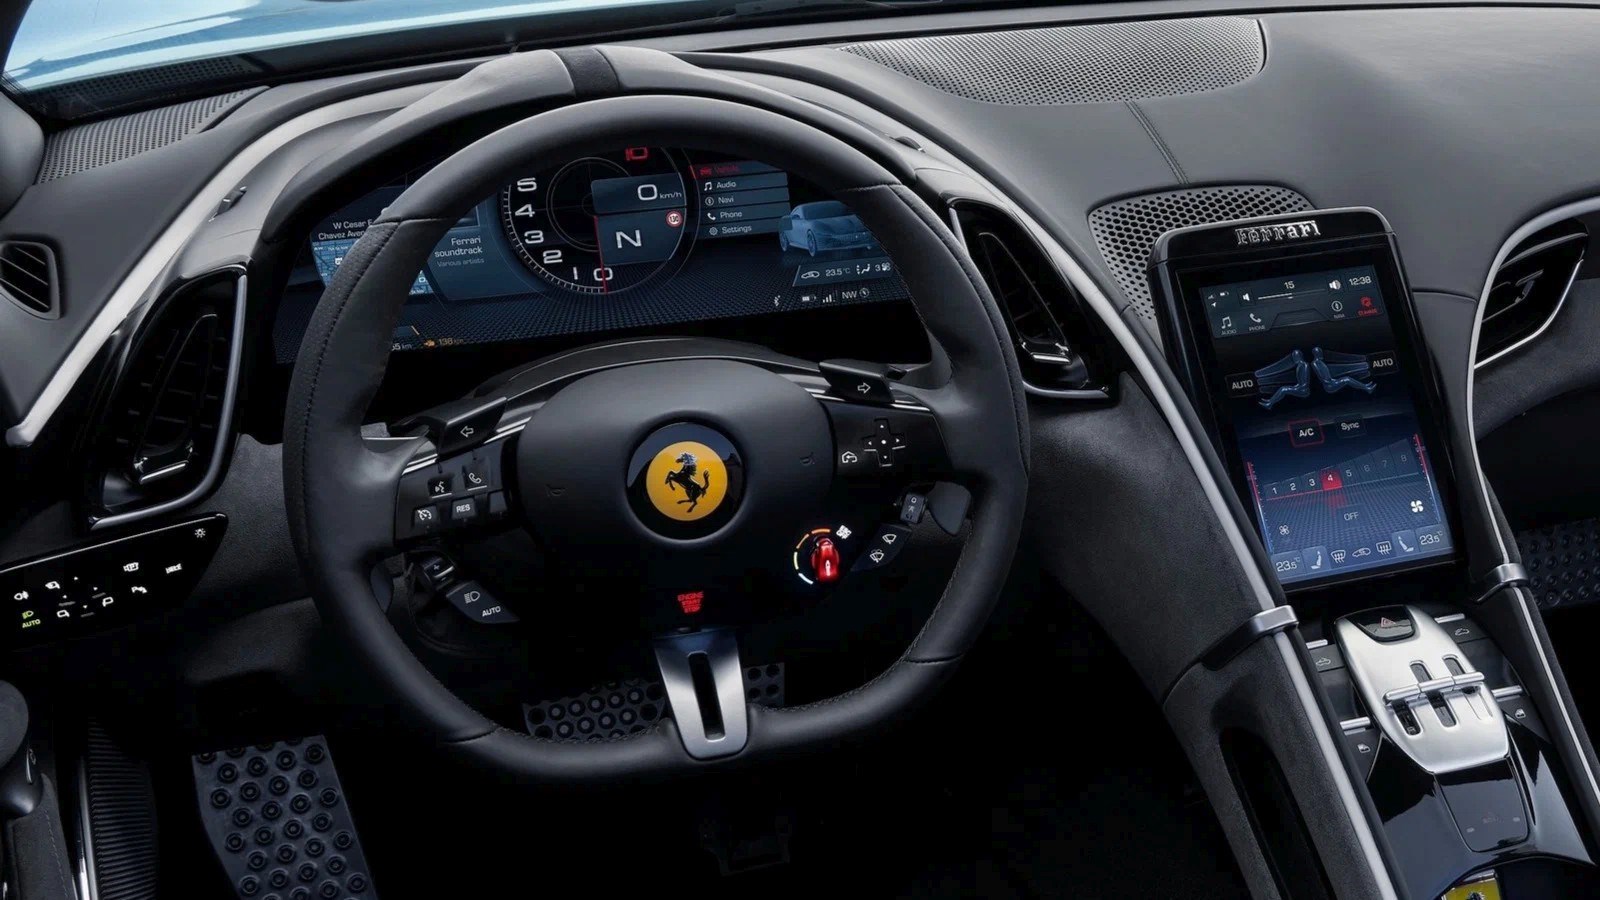 Ferrari otomobiller Samsung'un OLED ekranlarıyla donatılacak